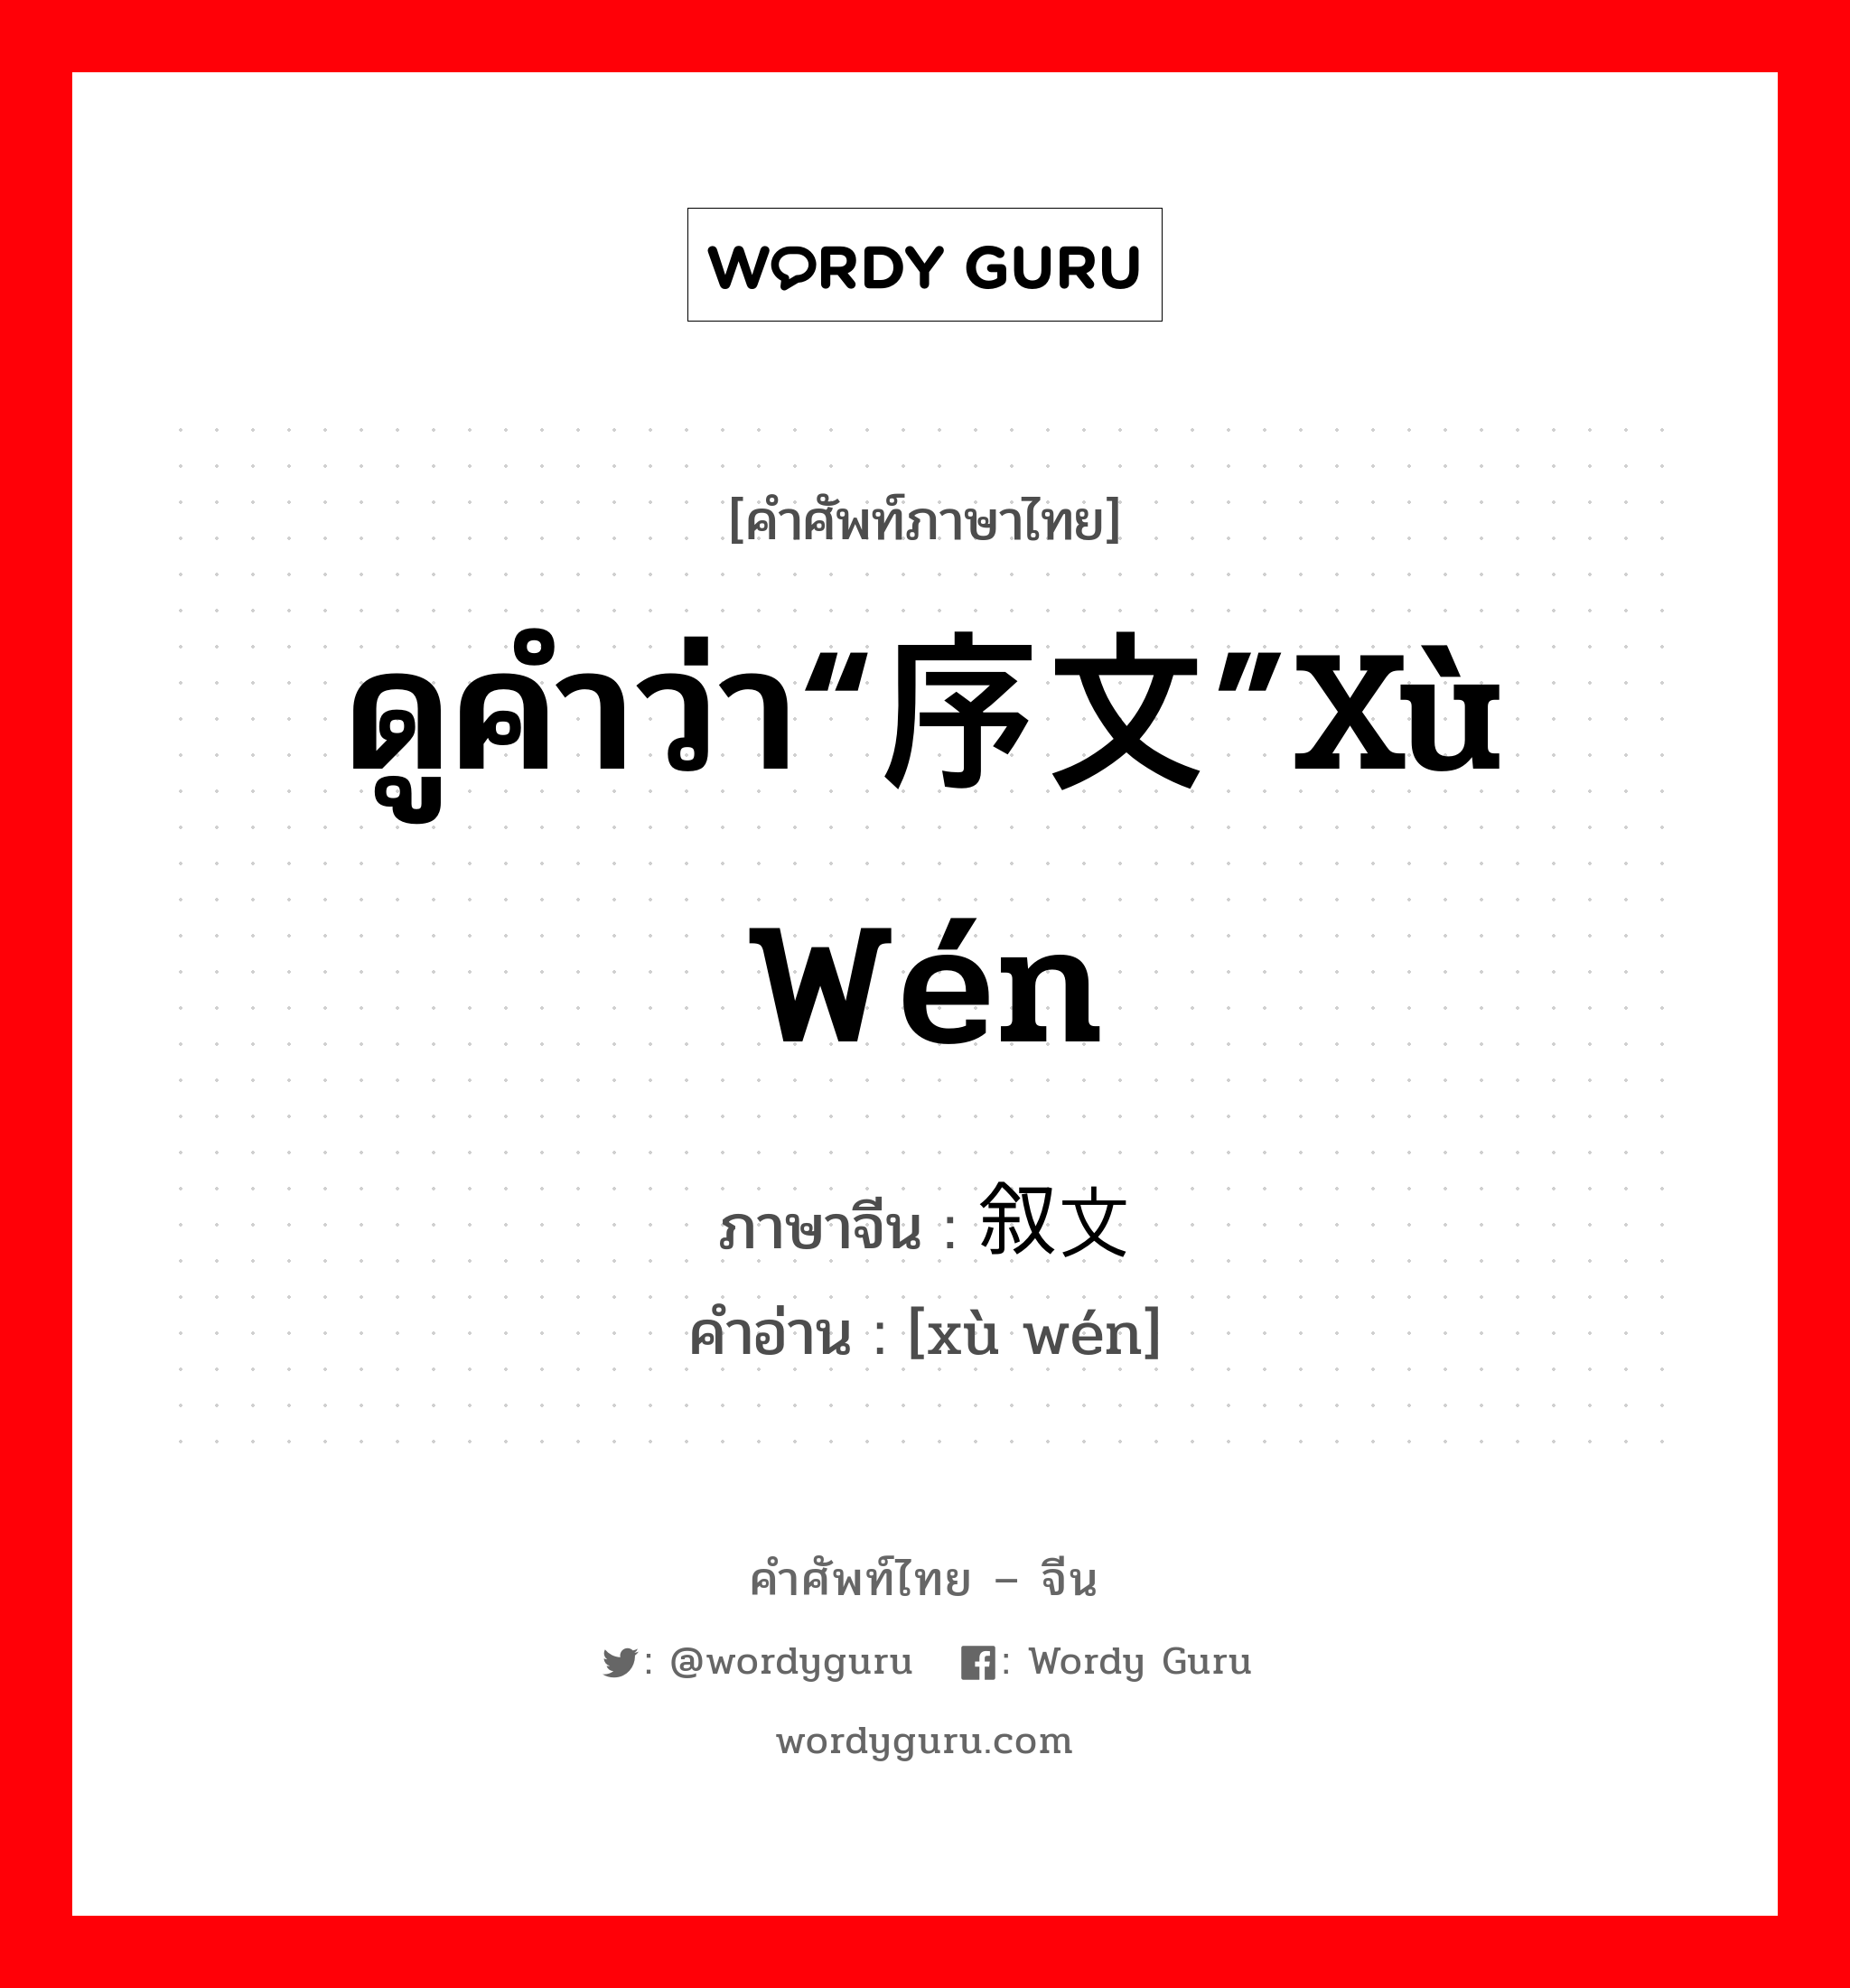 ดูคำว่า“序文”xù wén ภาษาจีนคืออะไร, คำศัพท์ภาษาไทย - จีน ดูคำว่า“序文”xù wén ภาษาจีน 叙文 คำอ่าน [xù wén]